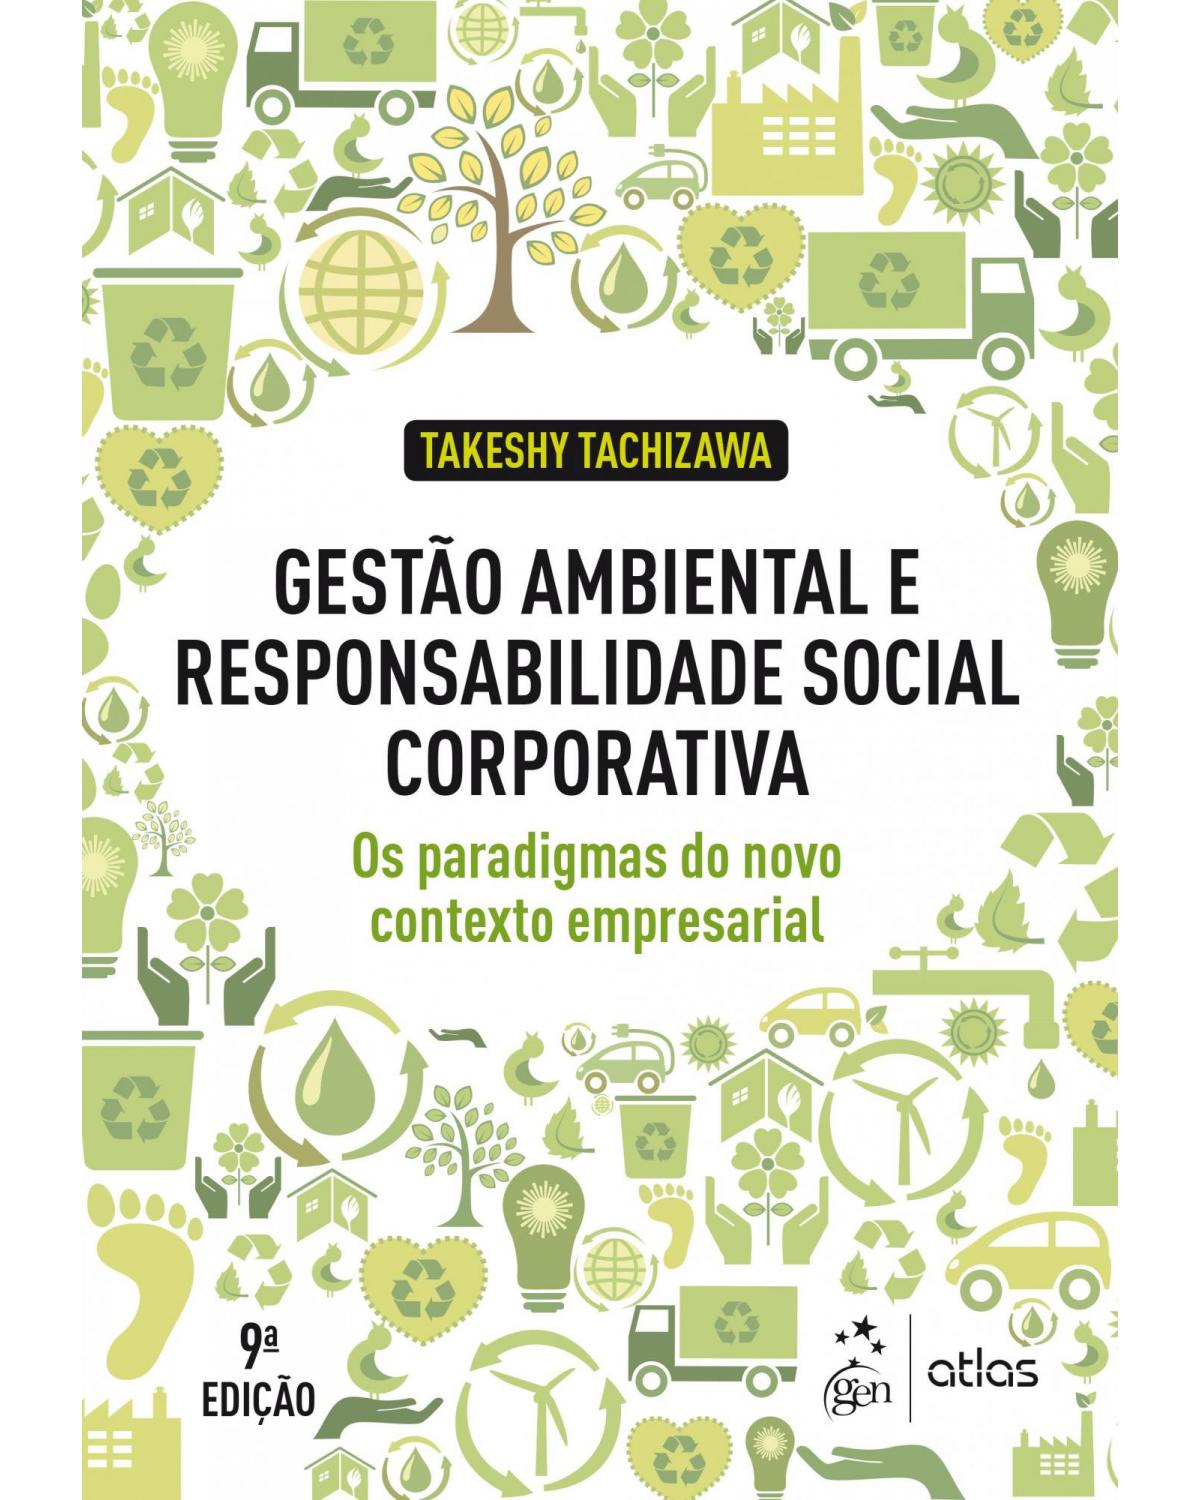 Gestão ambiental e responsabilidade social corporativa - 9ª Edição | 2019